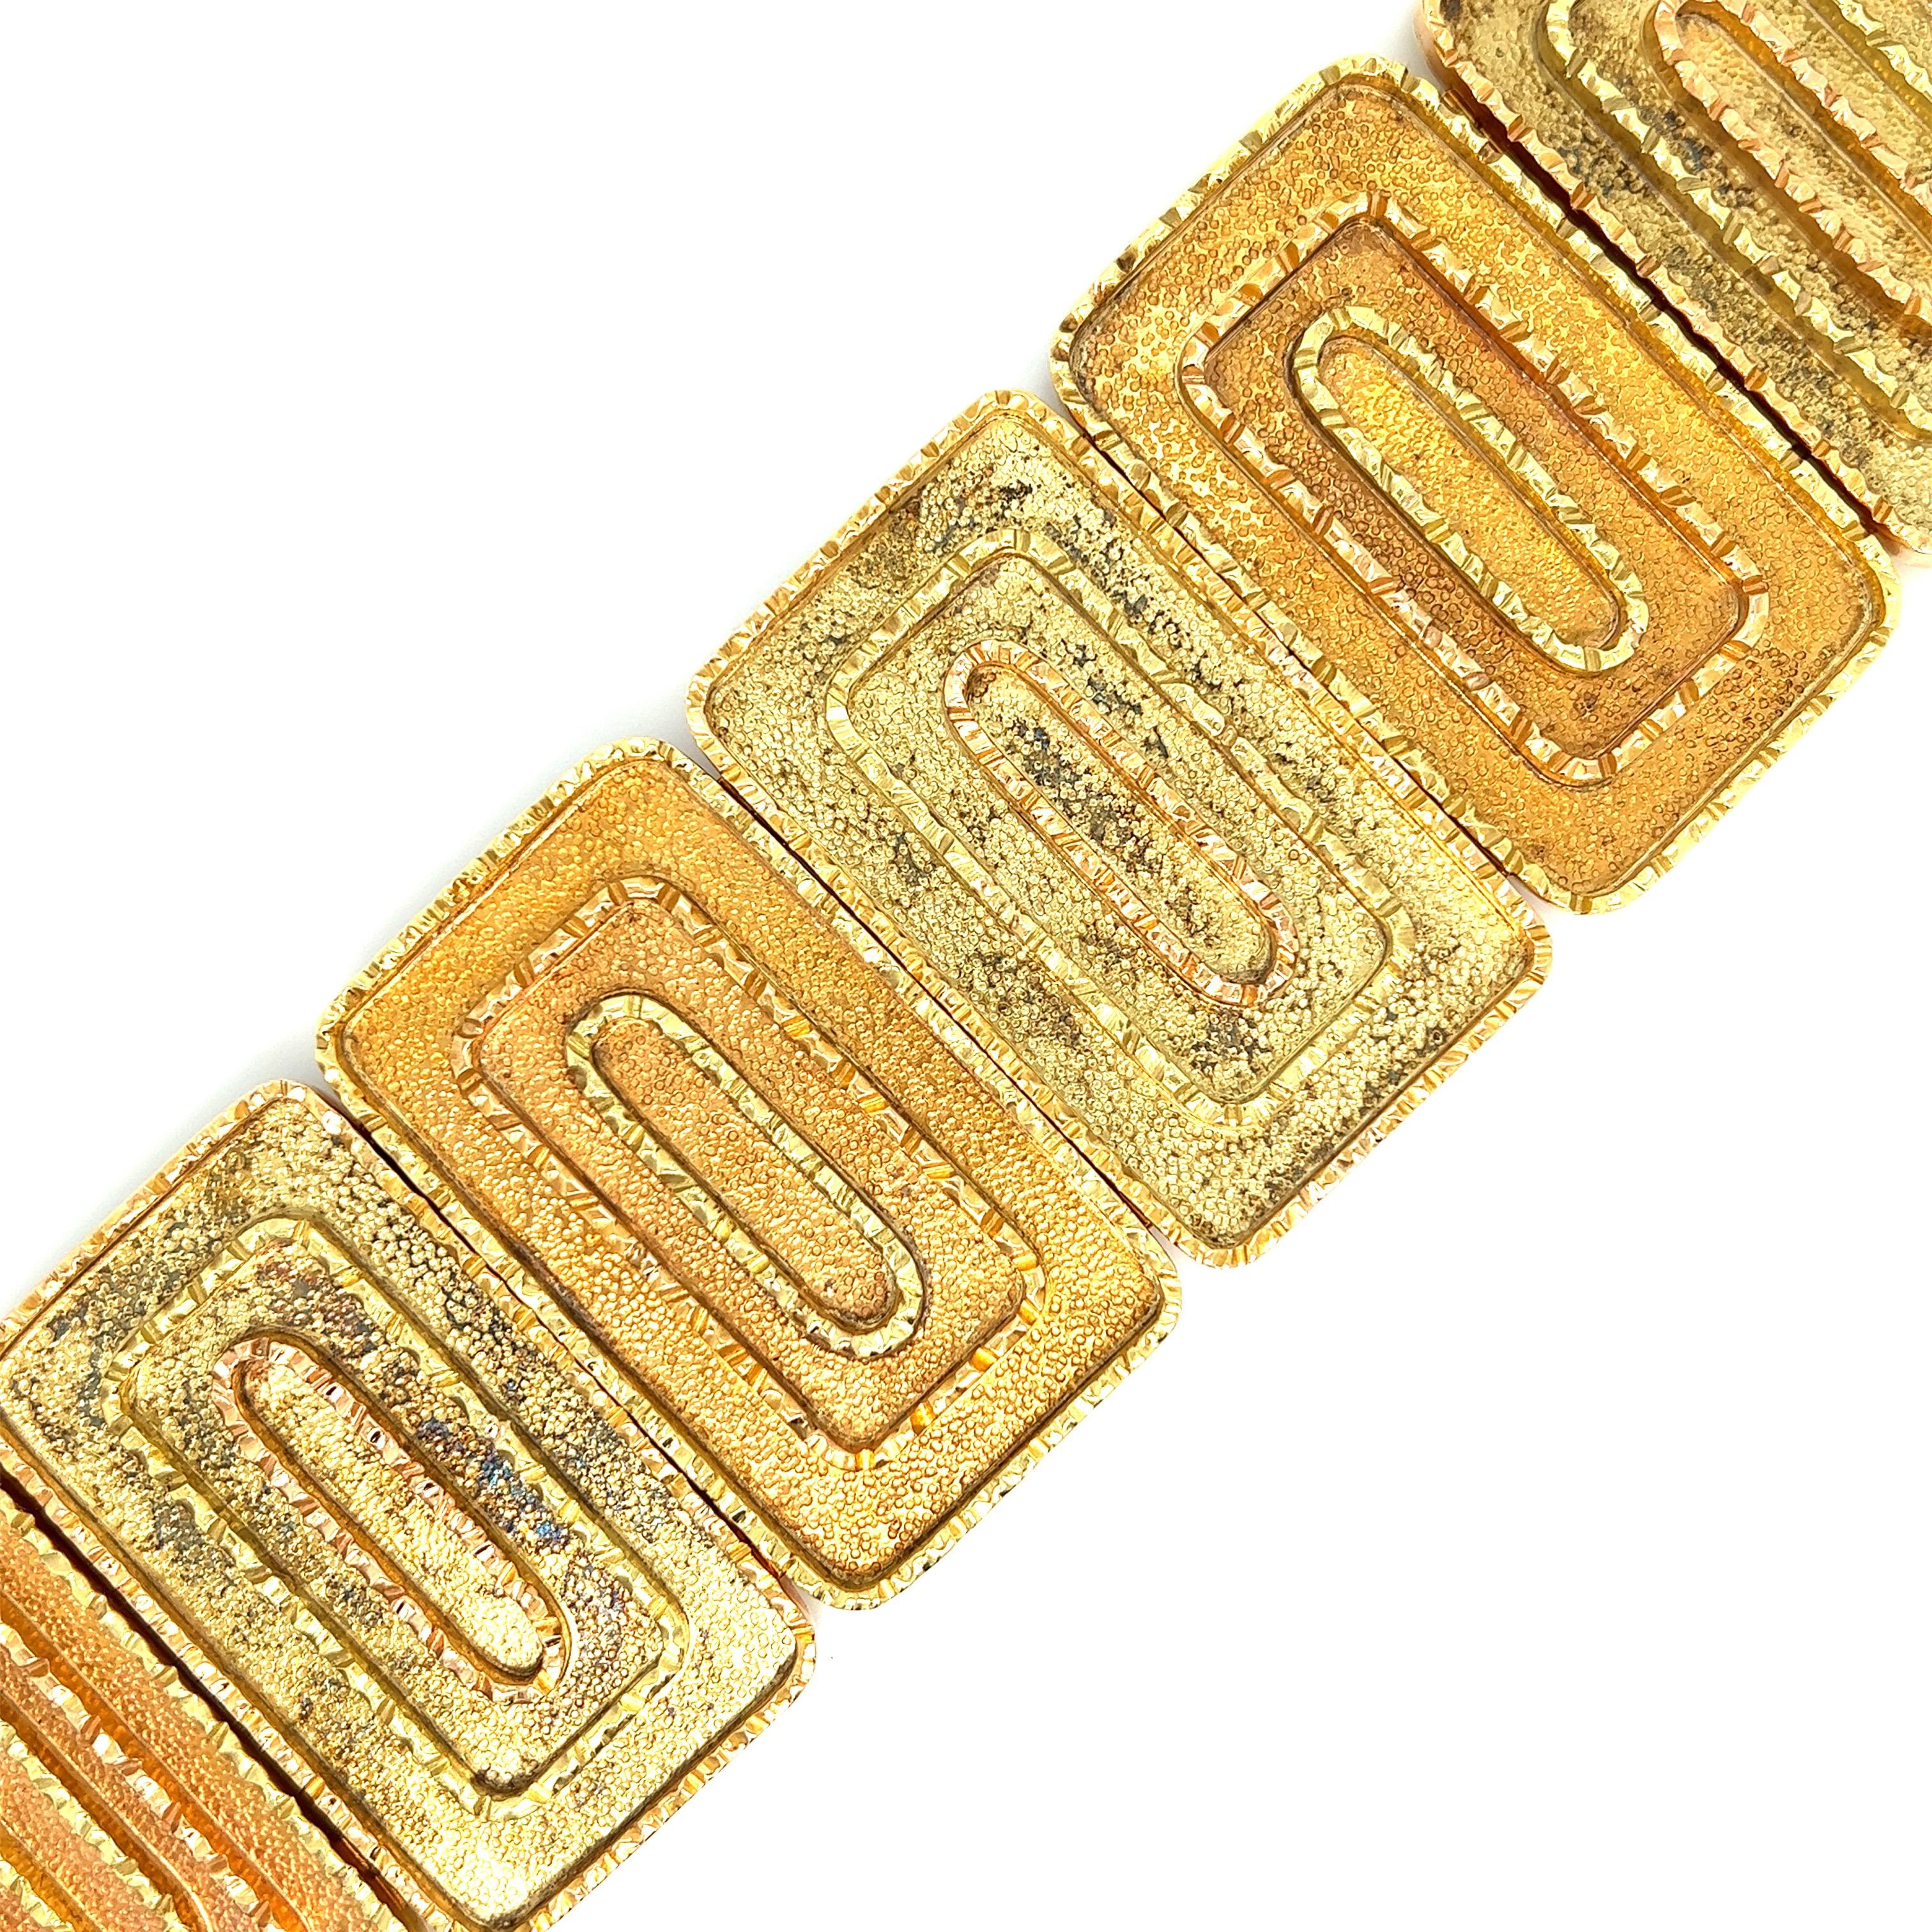 Zweifarbiges, rechteckiges Goldarmband 

18 Karat Gelbgold und Roségold; markiert 18kt

Größe: Breite 1,88 Zoll, Länge 7,13 Zoll
Gesamtgewicht: 218,6 Gramm